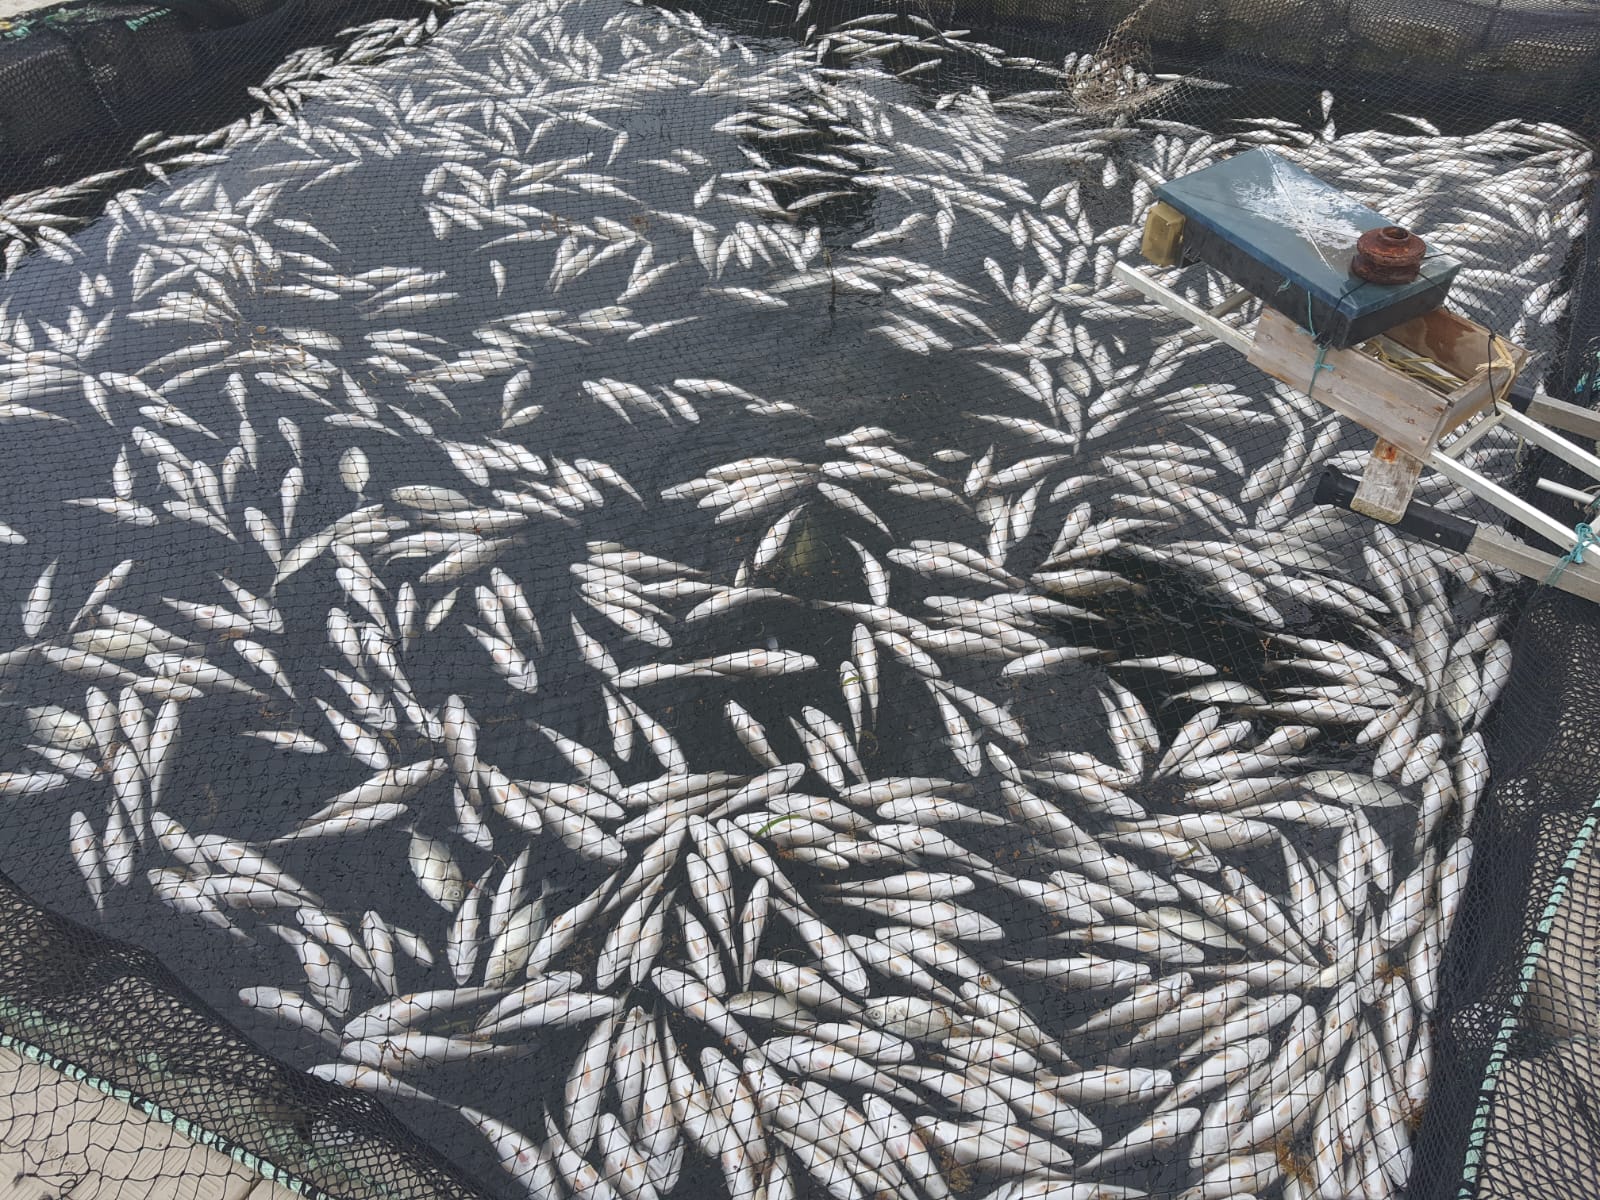     Des milliers de poissons morts dans un élevage au François

